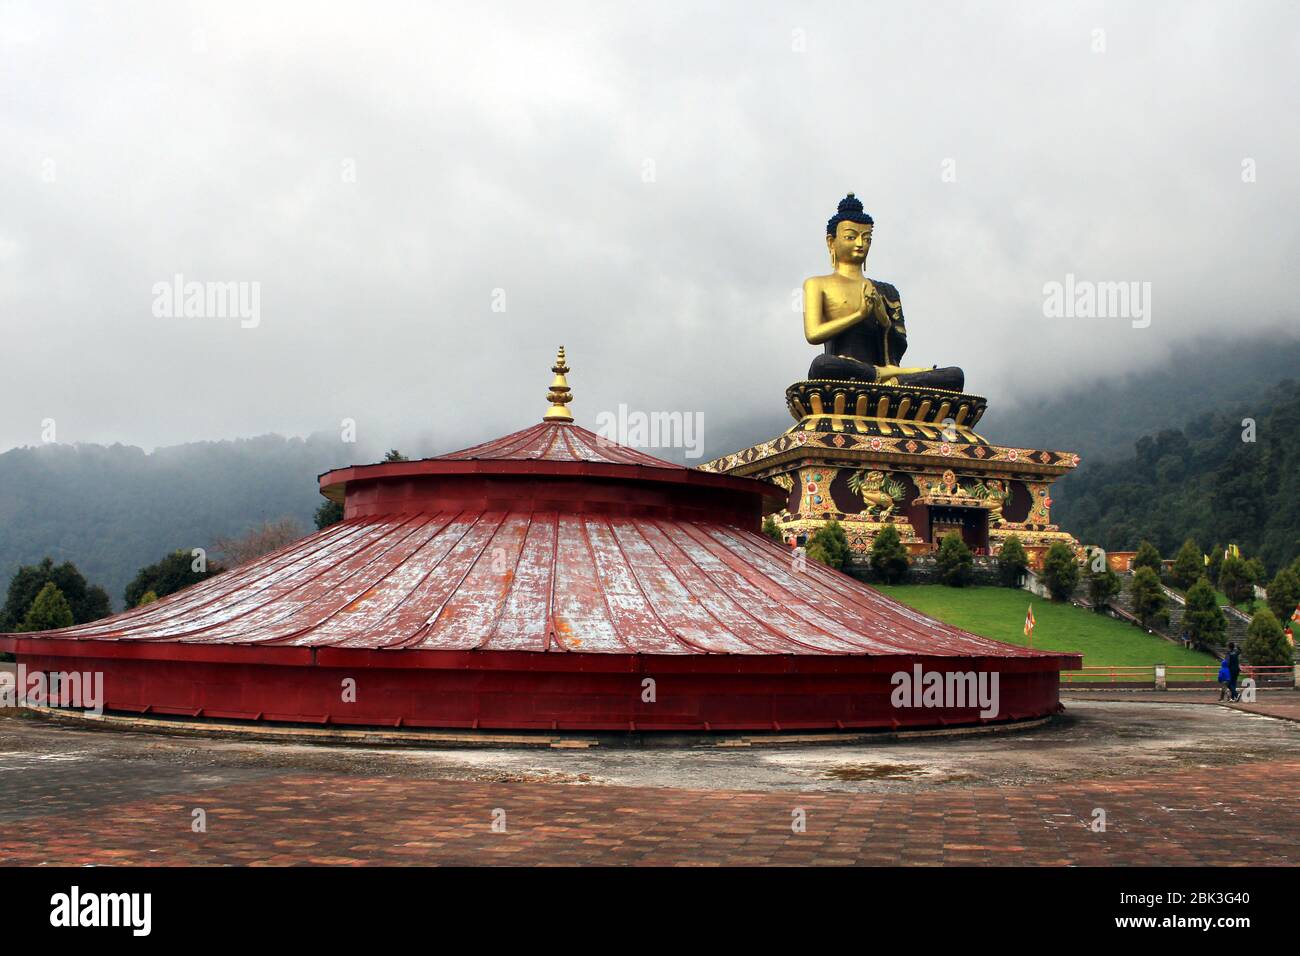 Parc de Bouddha de Ravangla. Magnifique statue immense de Bouddha, à Rabangla , Sikkim , Inde. Statue de Bouddha Gautama dans le parc de Bouddha de Ravangla. Banque D'Images